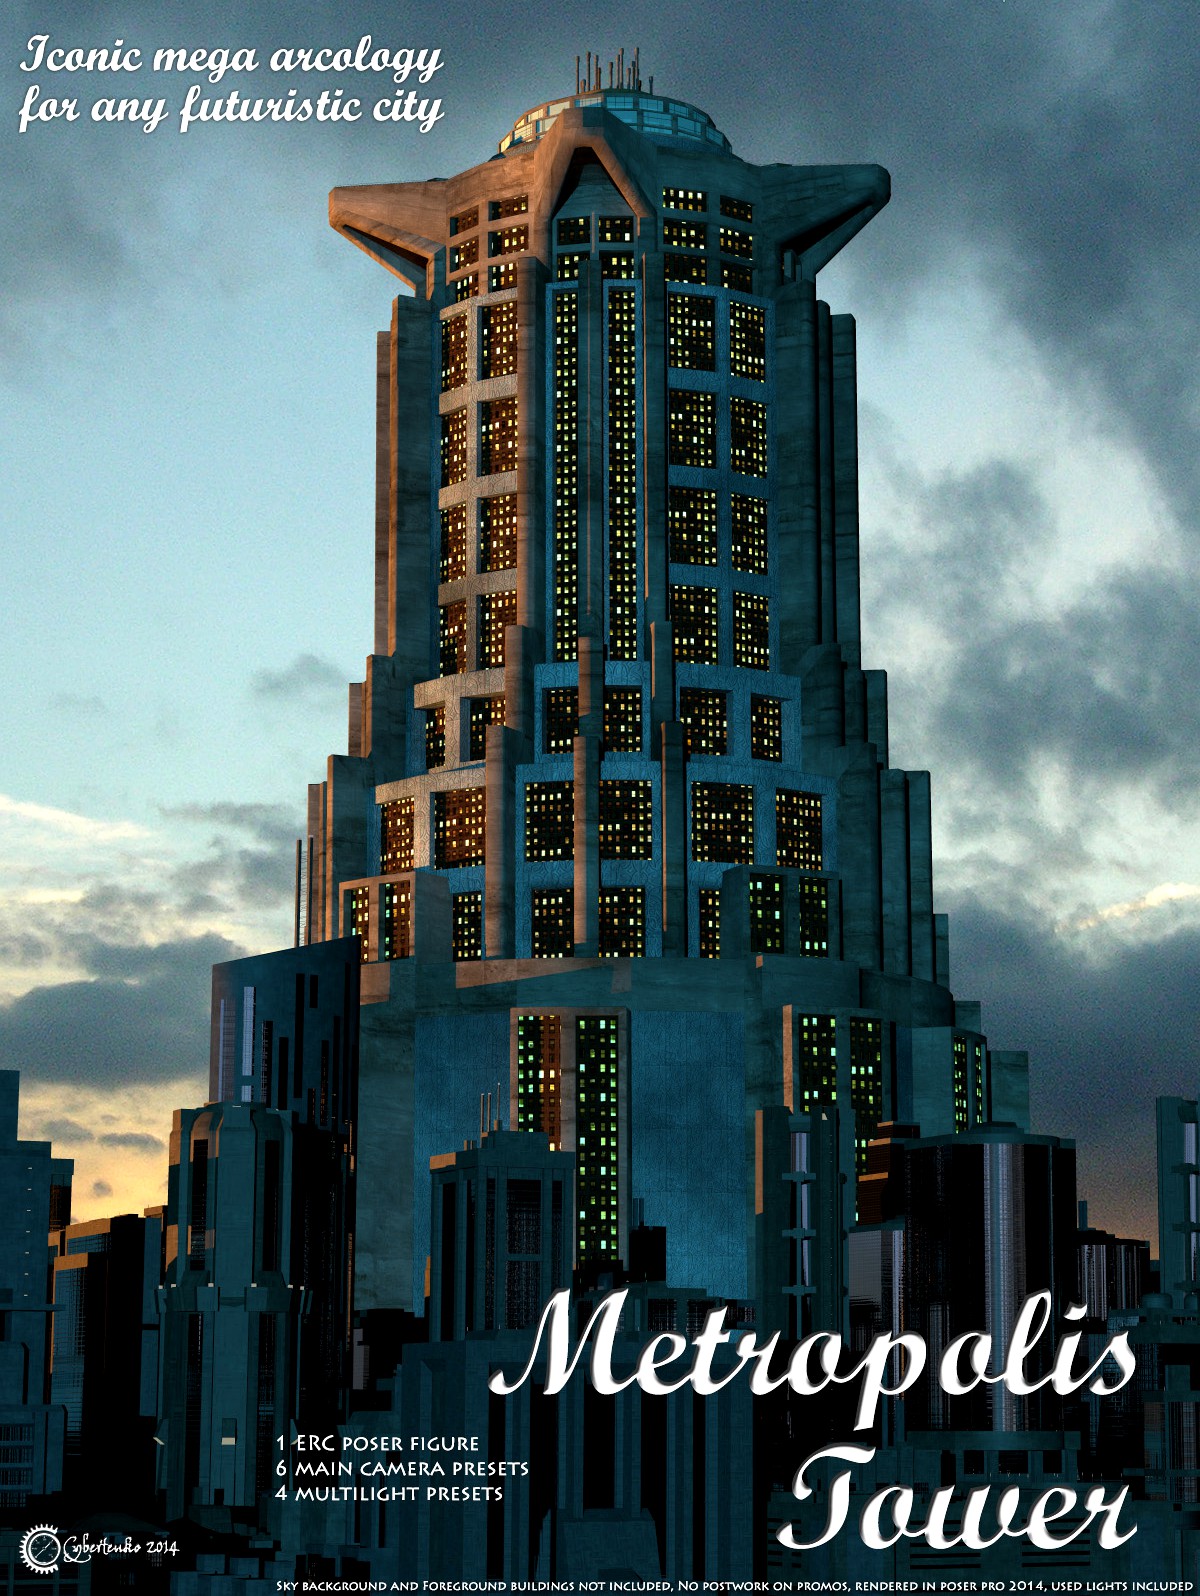 Metropolis Tower